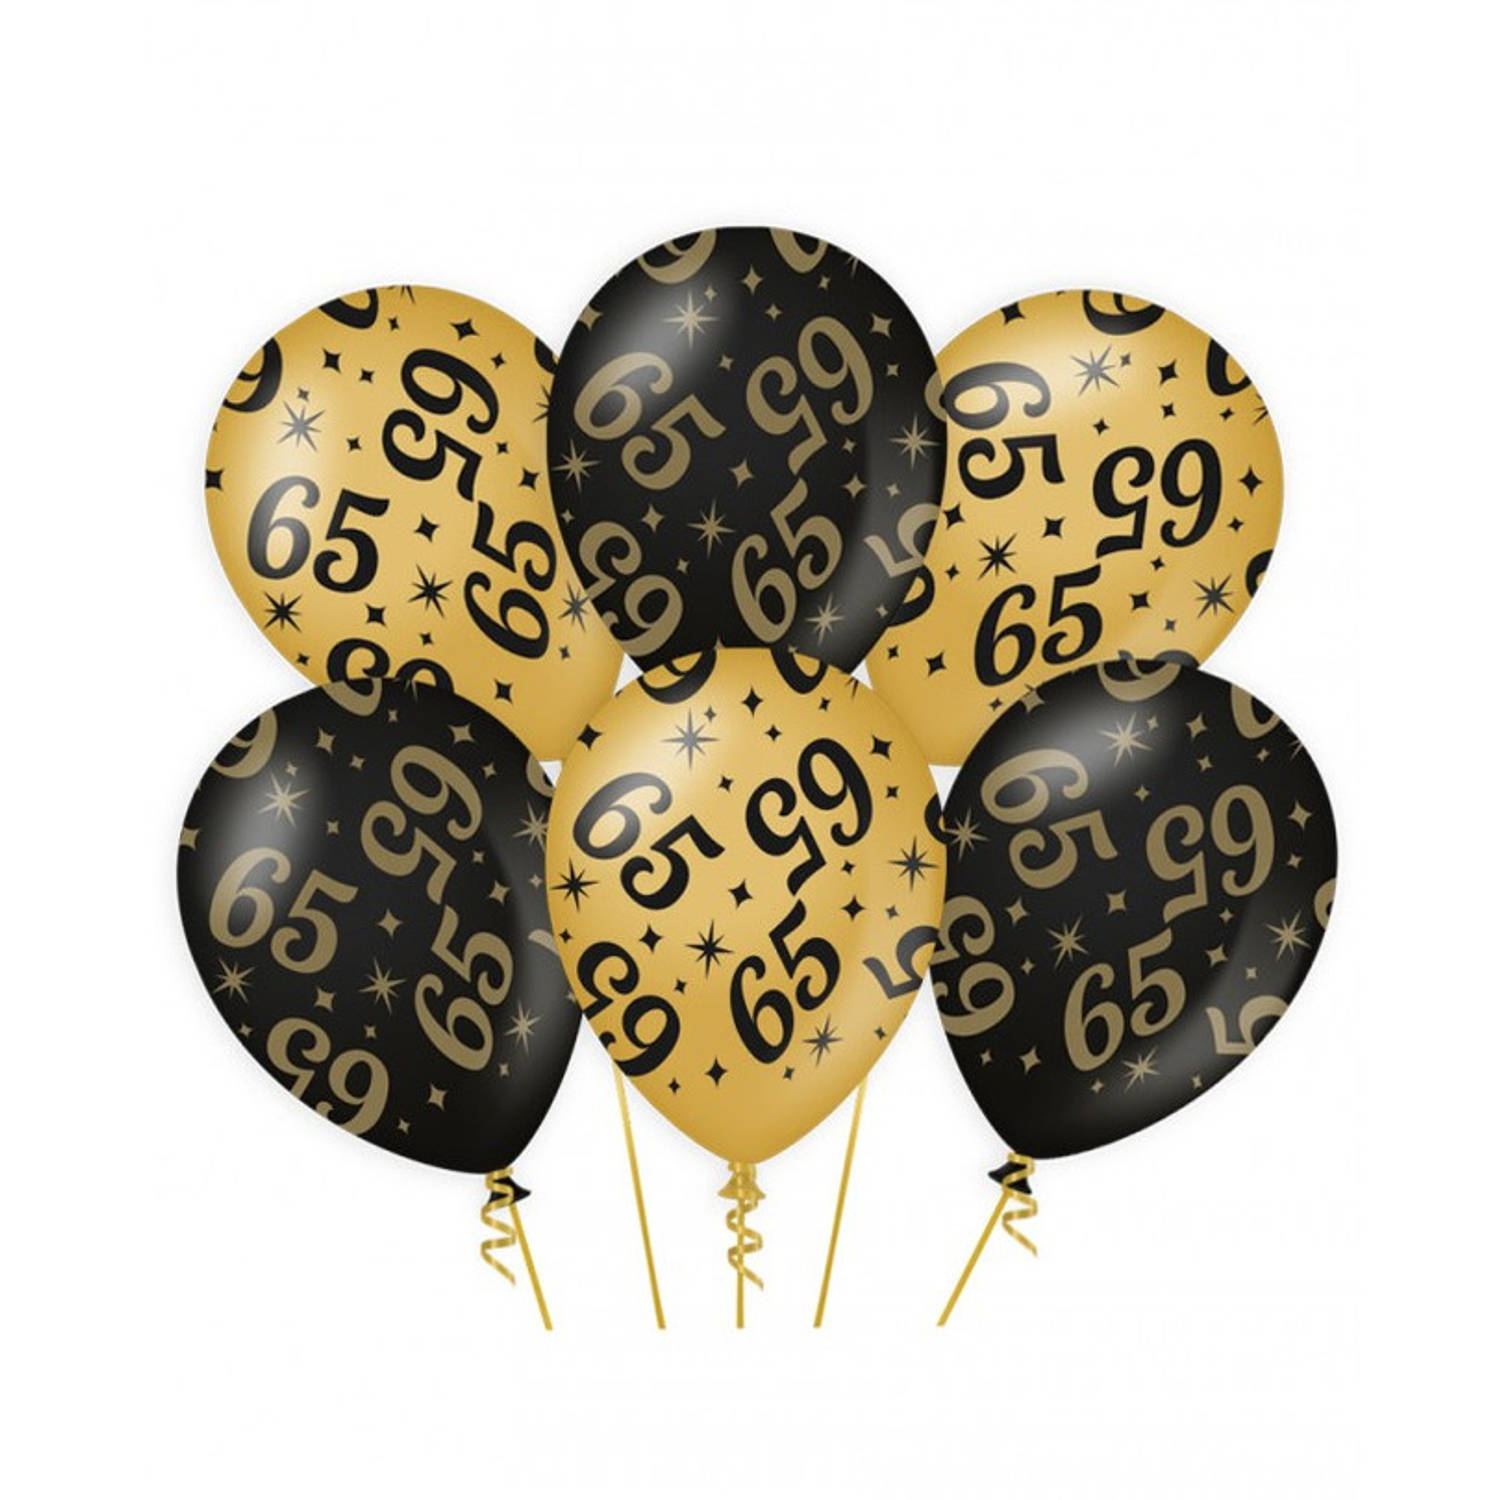 6x stuks leeftijd verjaardag feest ballonnen 65 jaar geworden zwart/goud 30 cm - Ballonnen